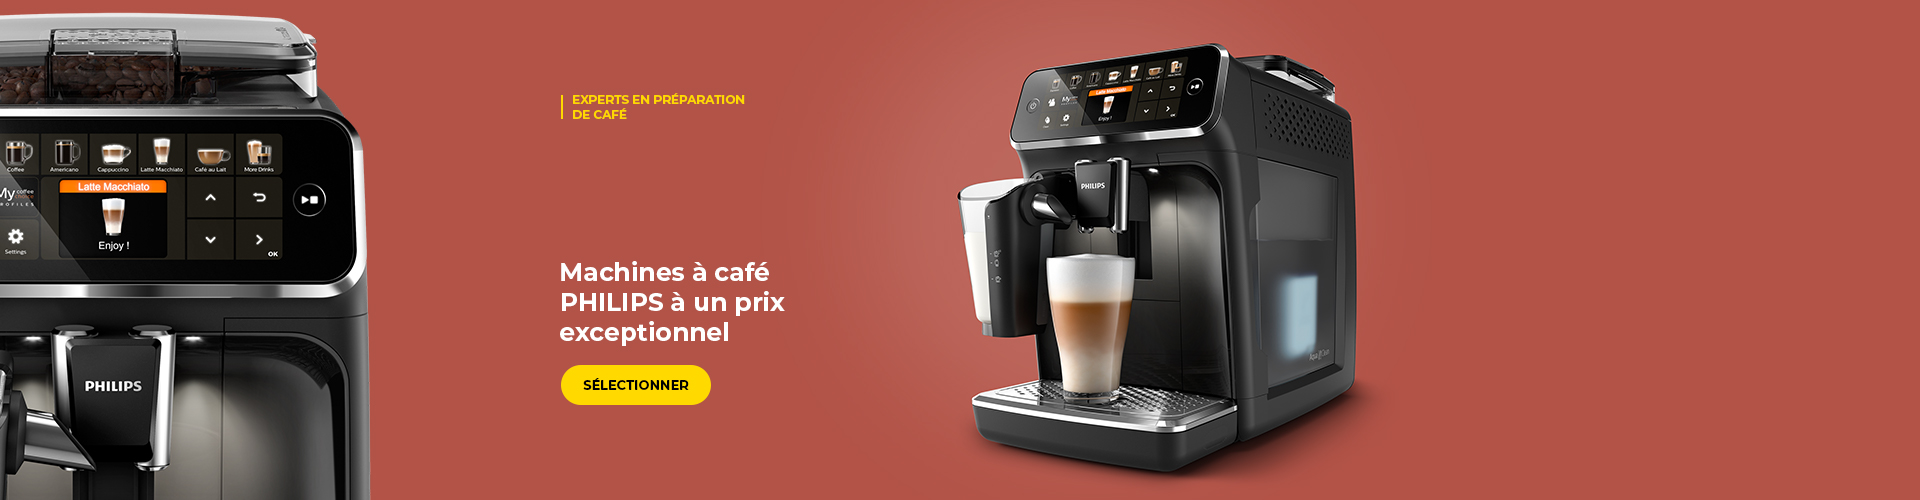 Machines à café PHILIPS à un prix exceptionnel